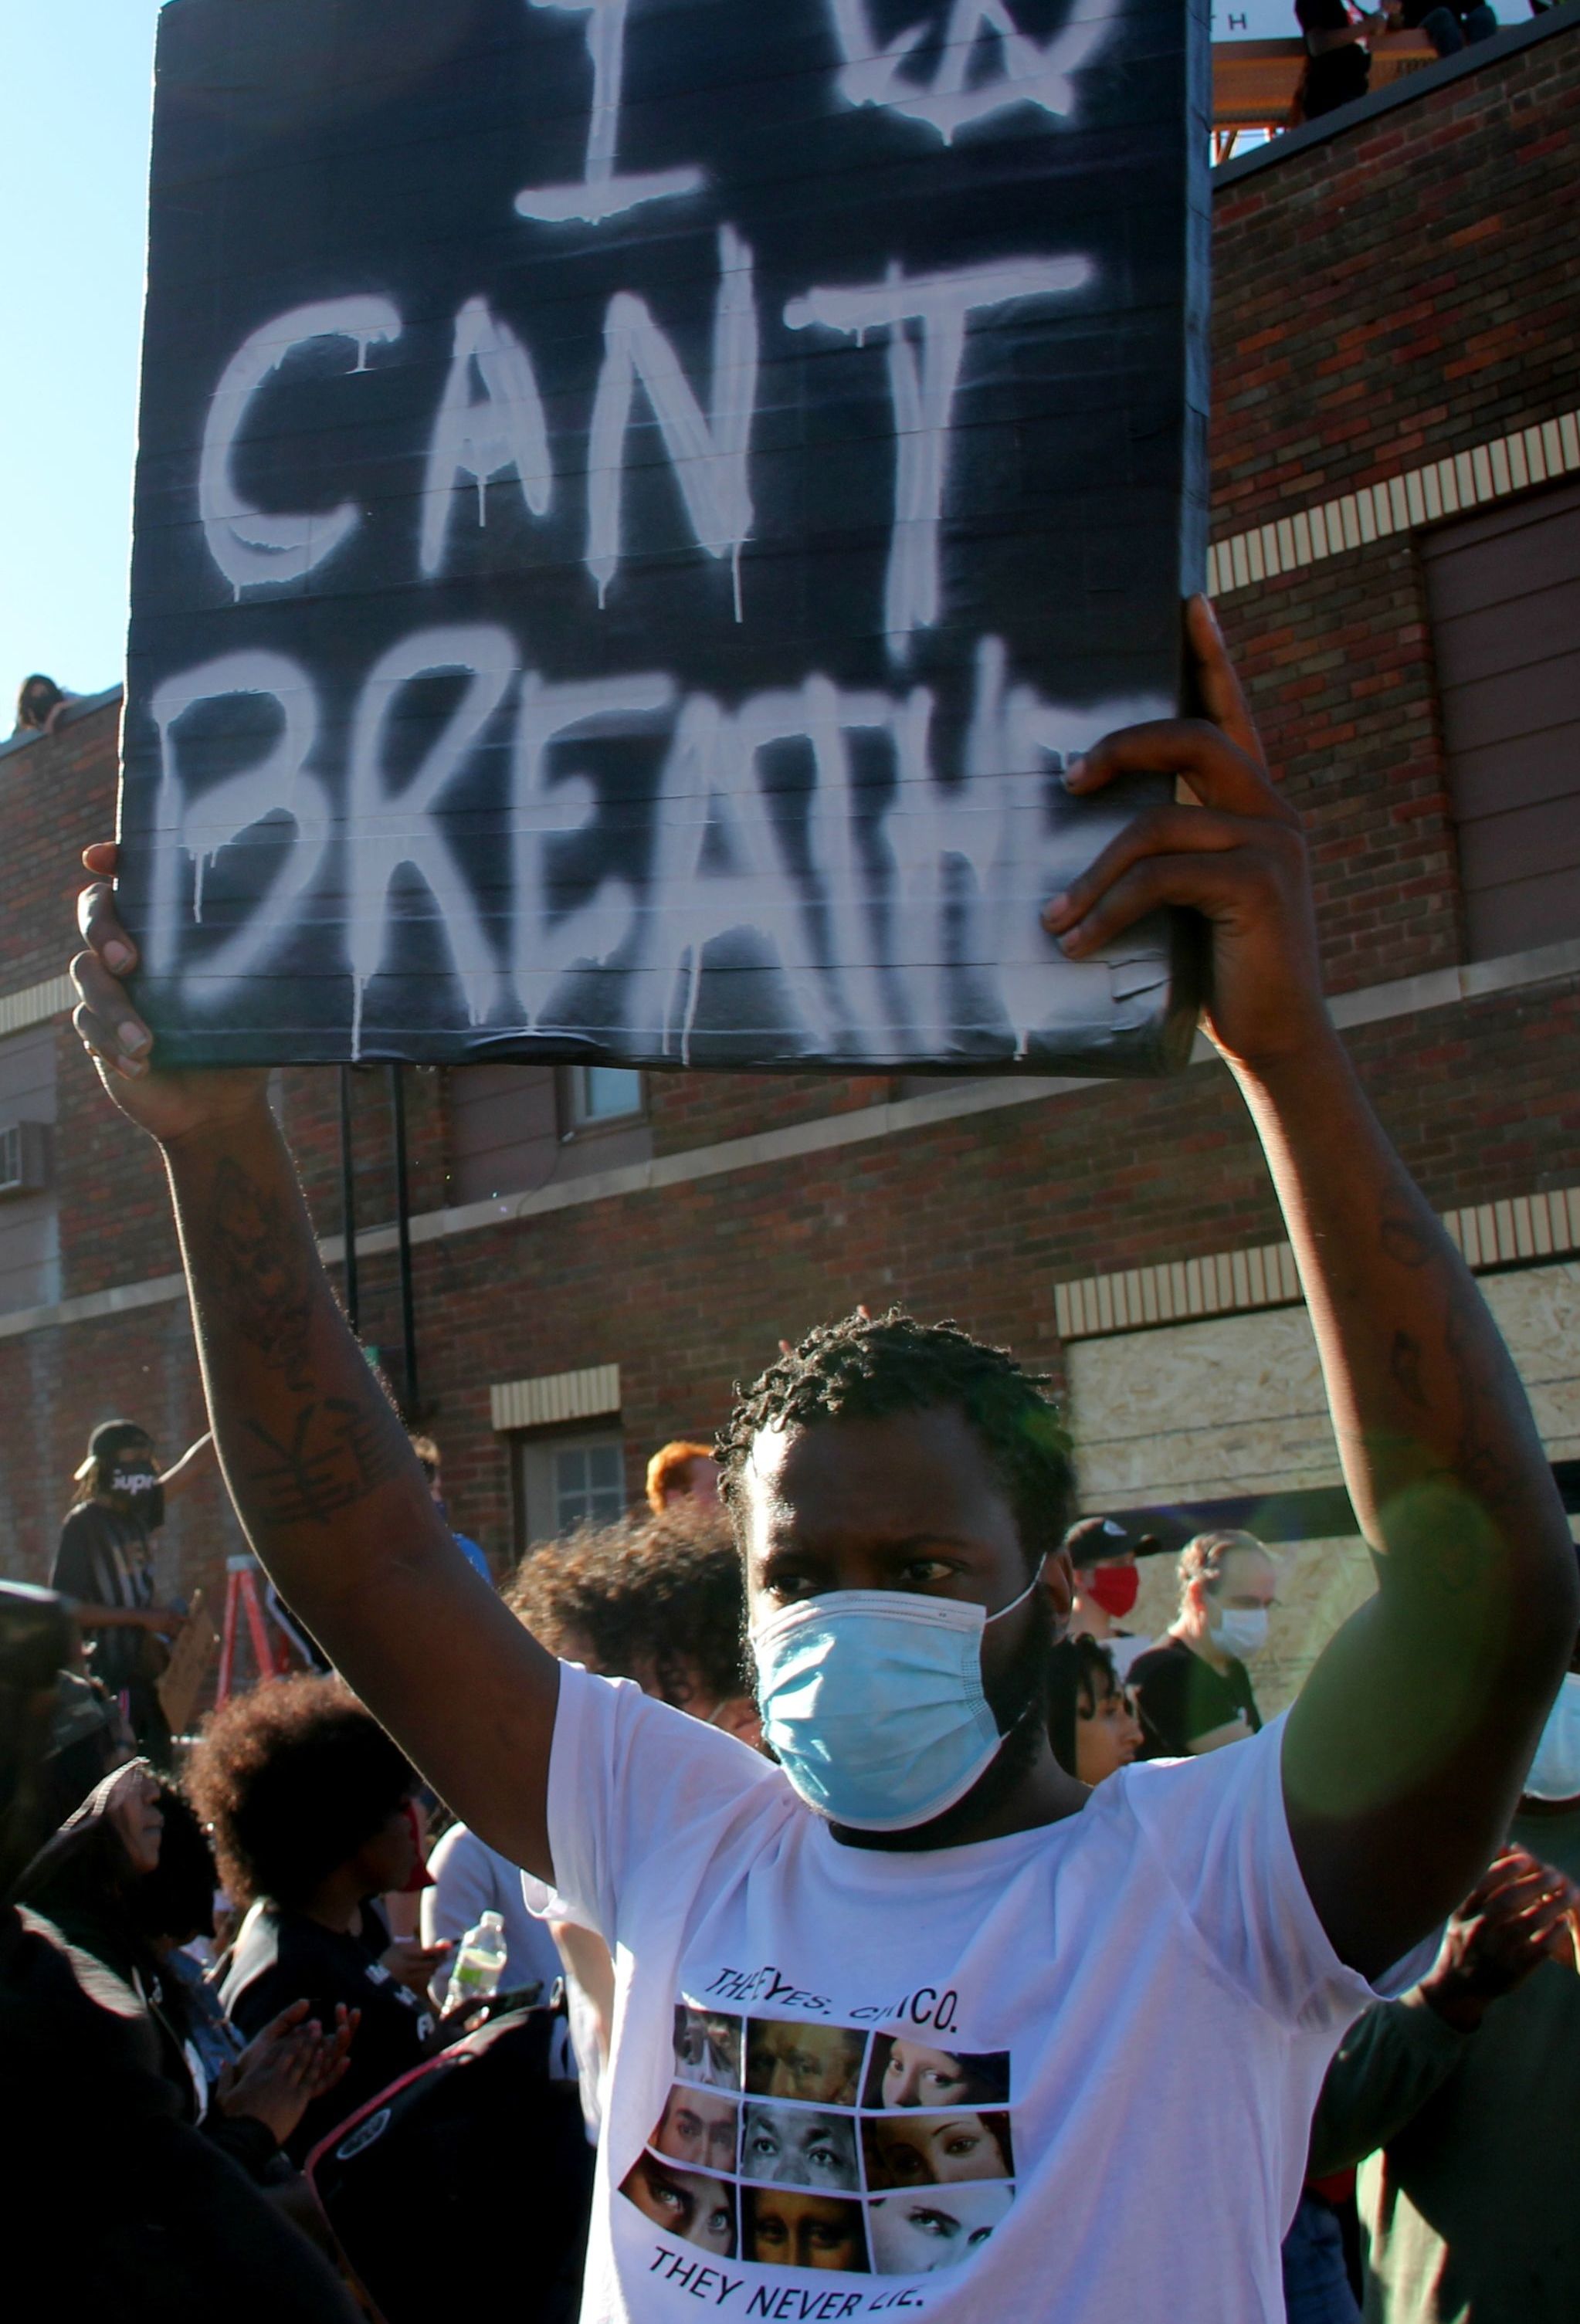 Участник мирной акции протеста в Миннеаполисе c плакатом " Я не могу дышать". Протесты проходят в городах США в связи со смертью при задержании полицией афроамериканца Джорджа Флойда в Миннеаполисе.